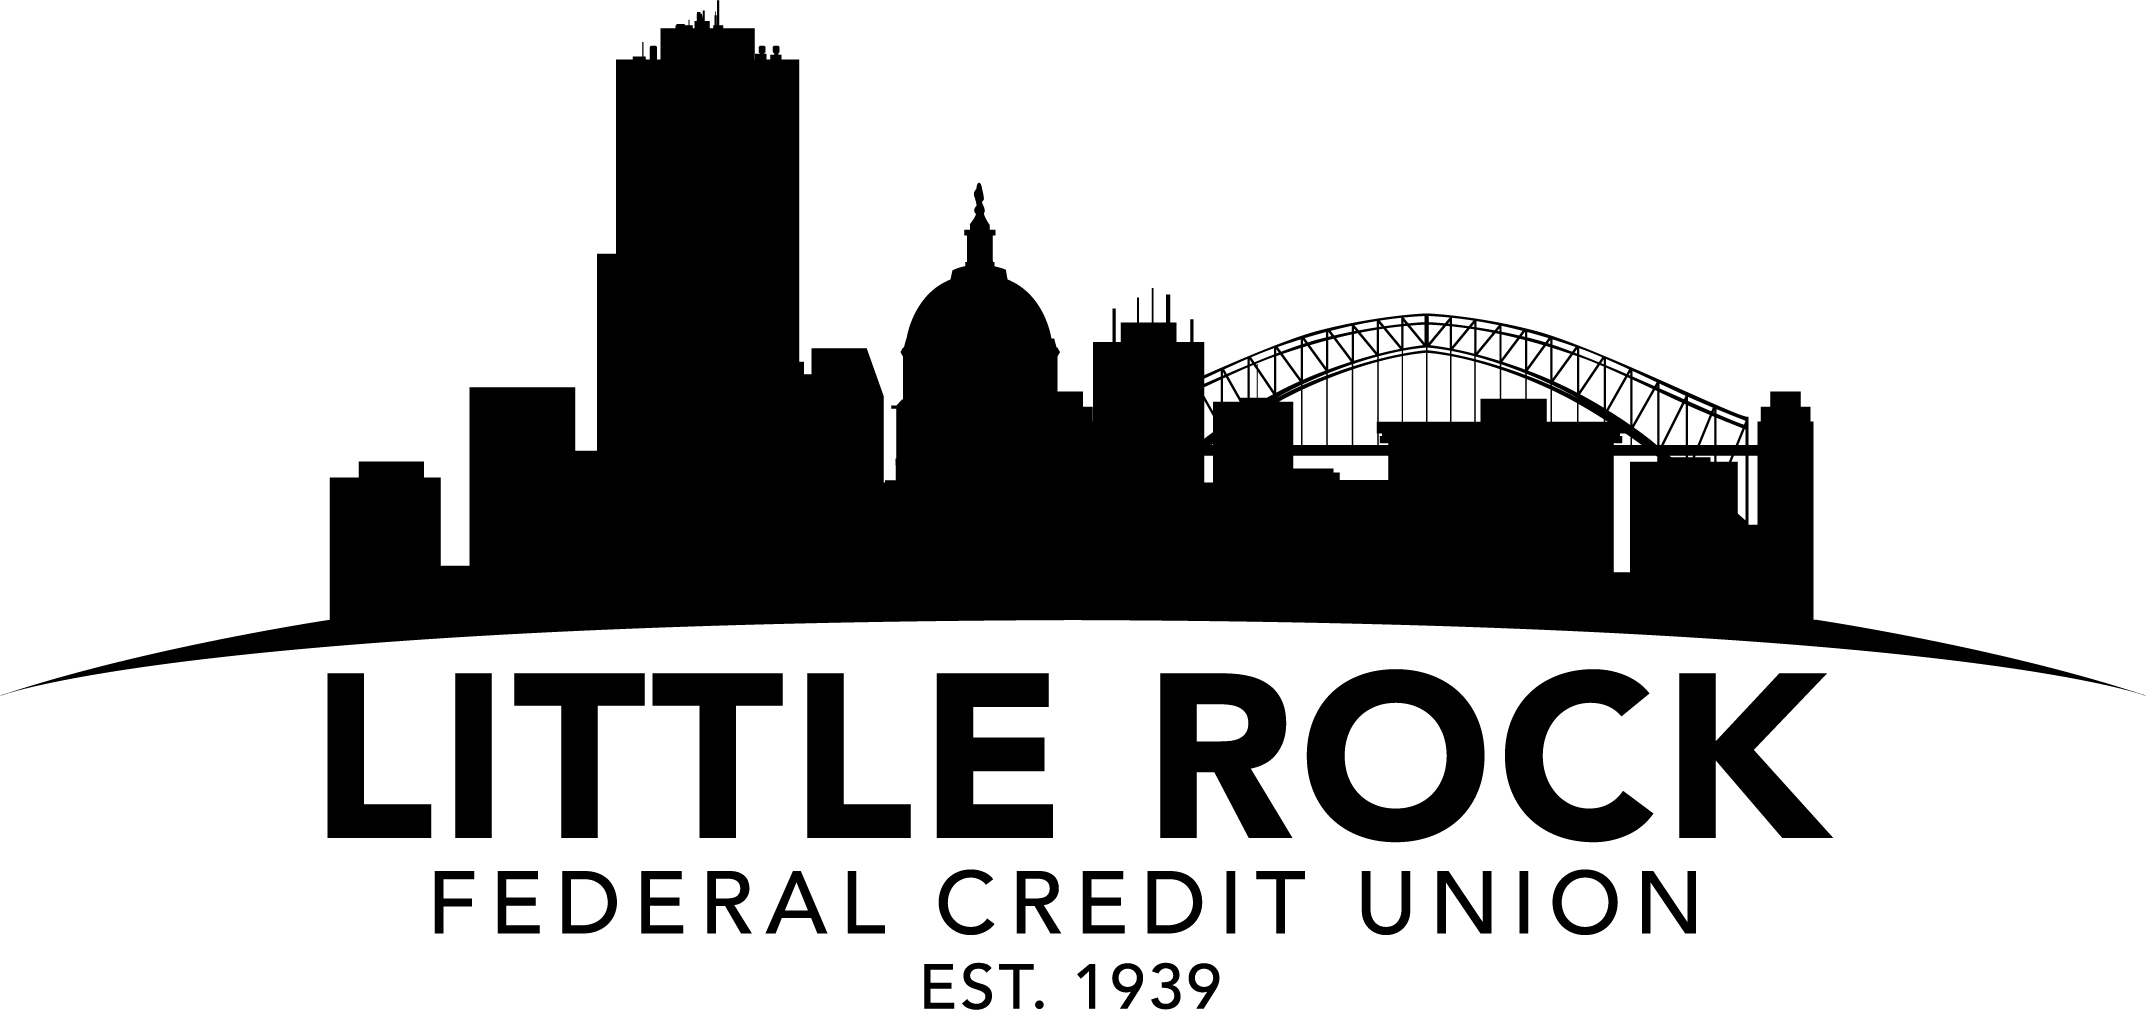 Digital Banking Logo